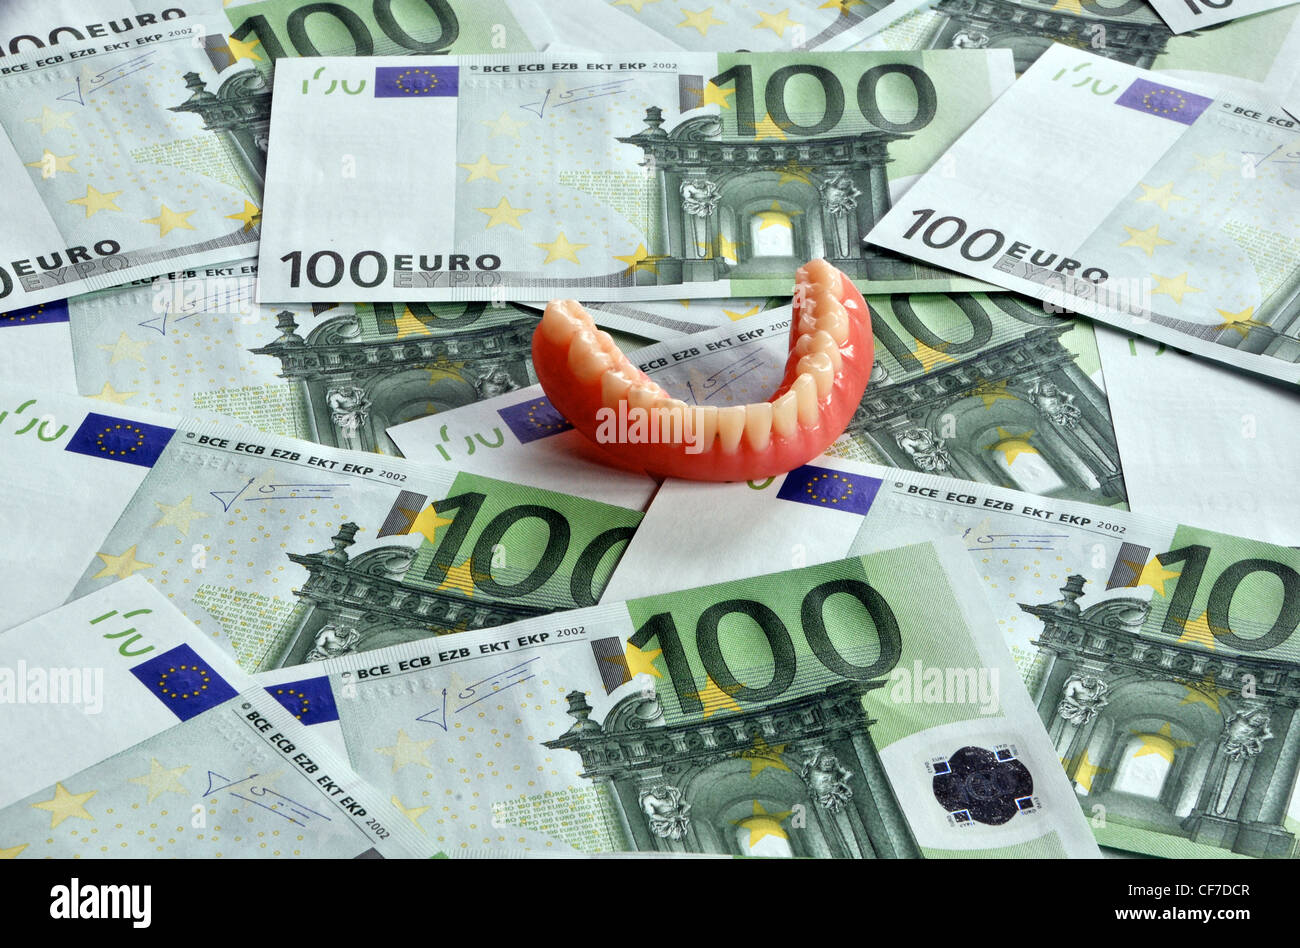 dental prosthesis on euro notes Stock Photo